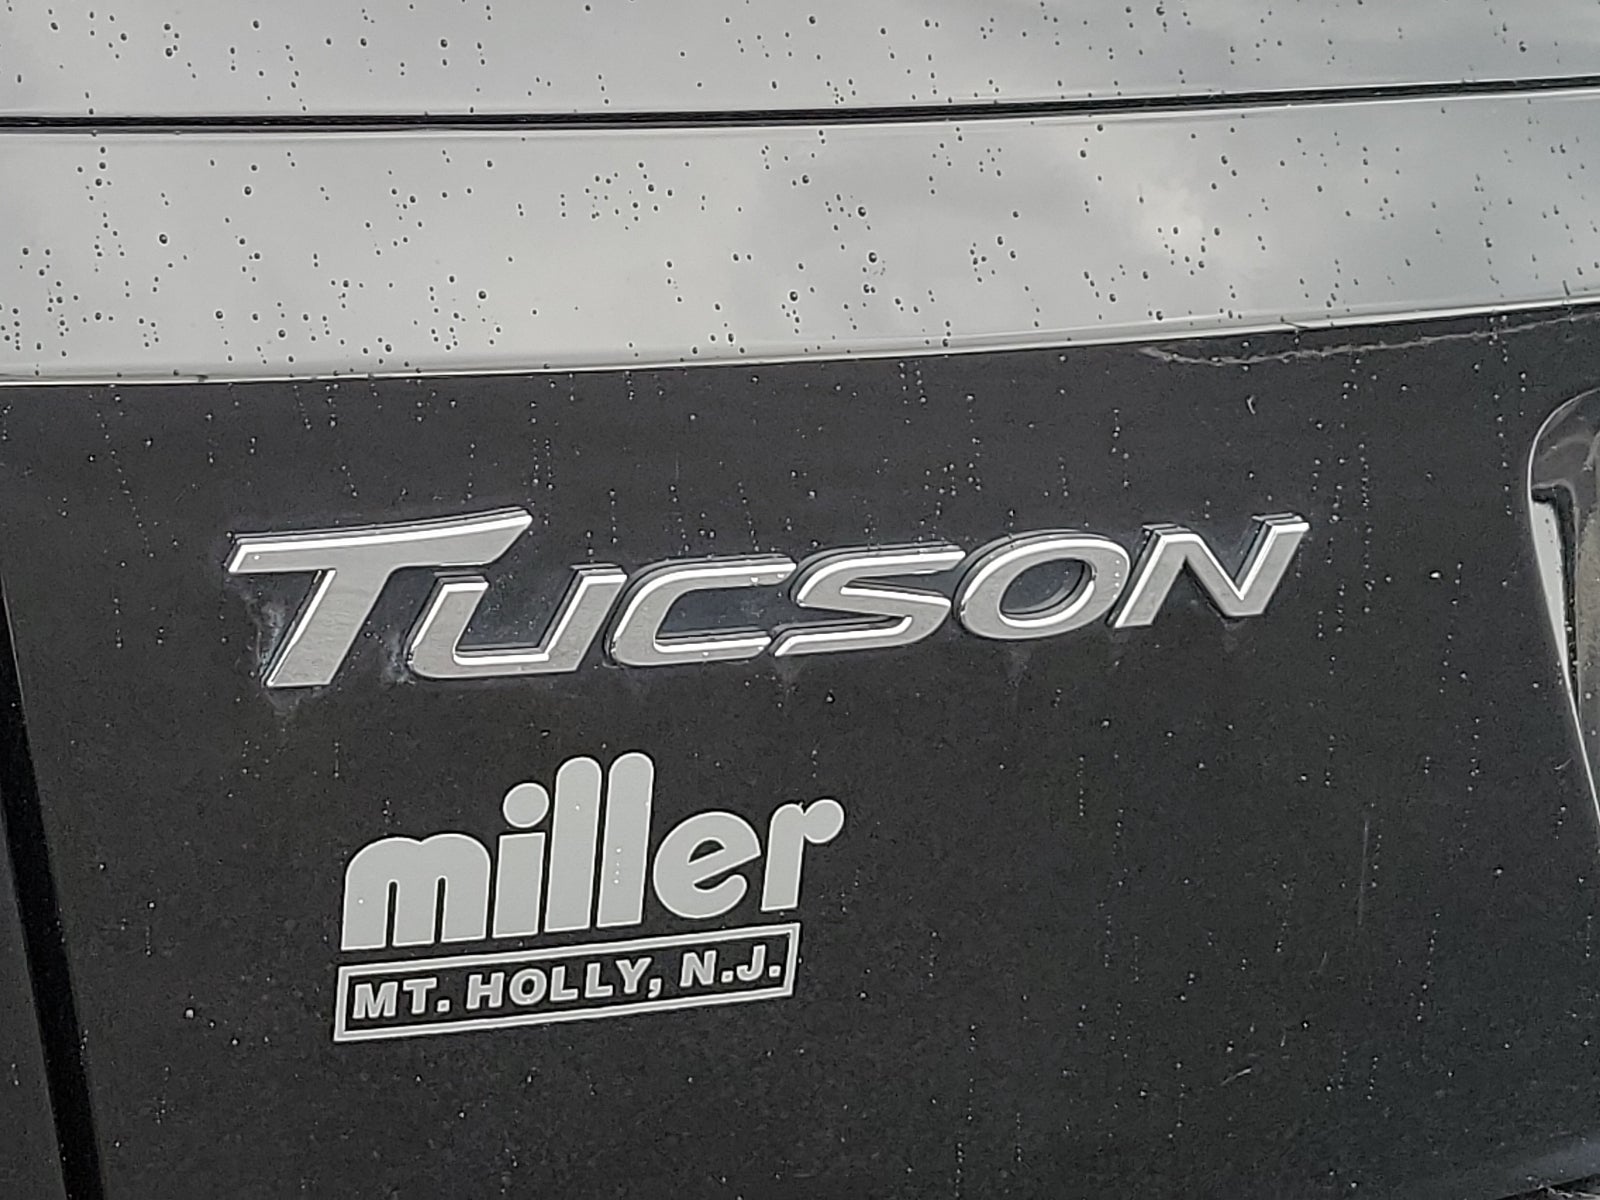 2018 Hyundai Tucson Sport